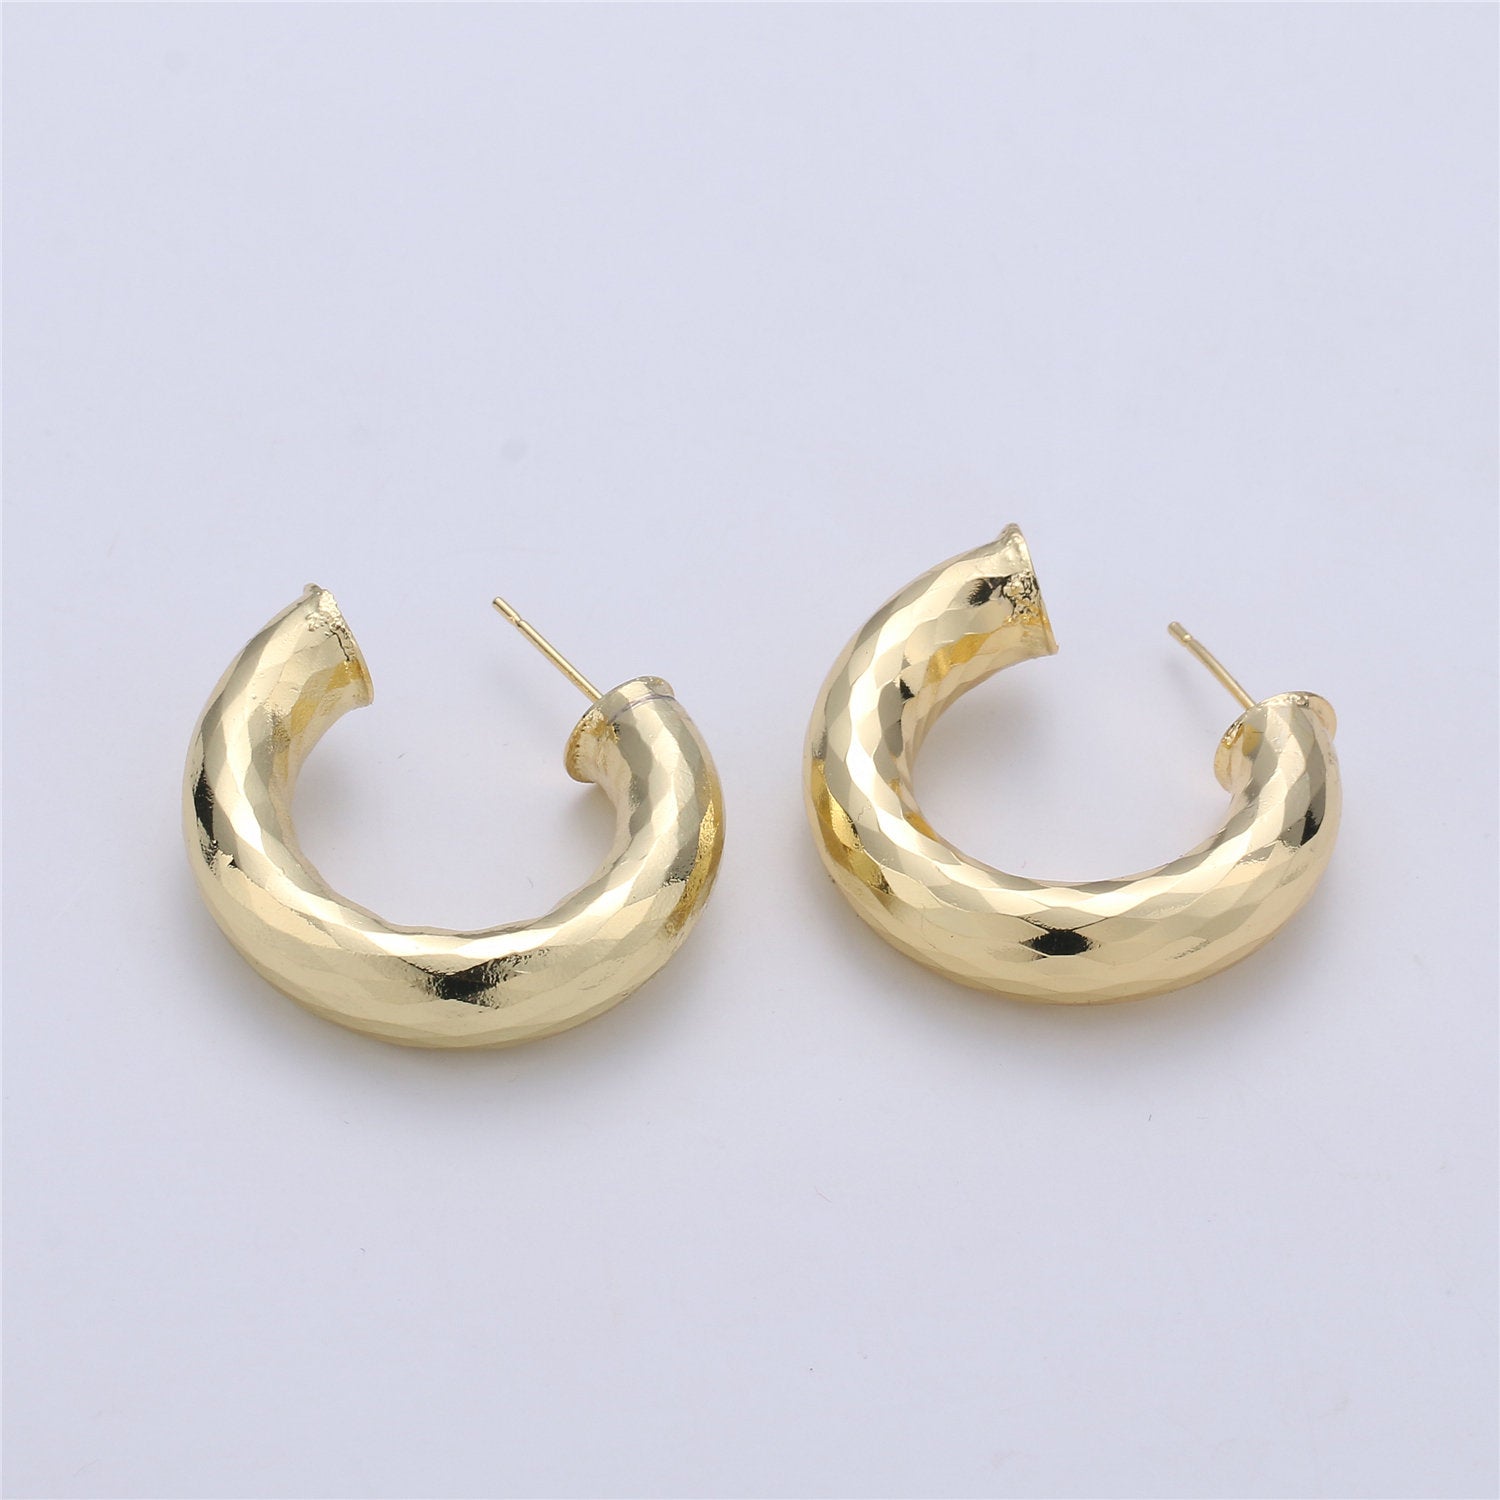 Thick Gold Hoop Earring, Chunky Gold Hoop, Medium Gold Hoop Earring, Open Hoop Earring, Tube Hoop Earring Lead, Nickel Free - DLUXCA